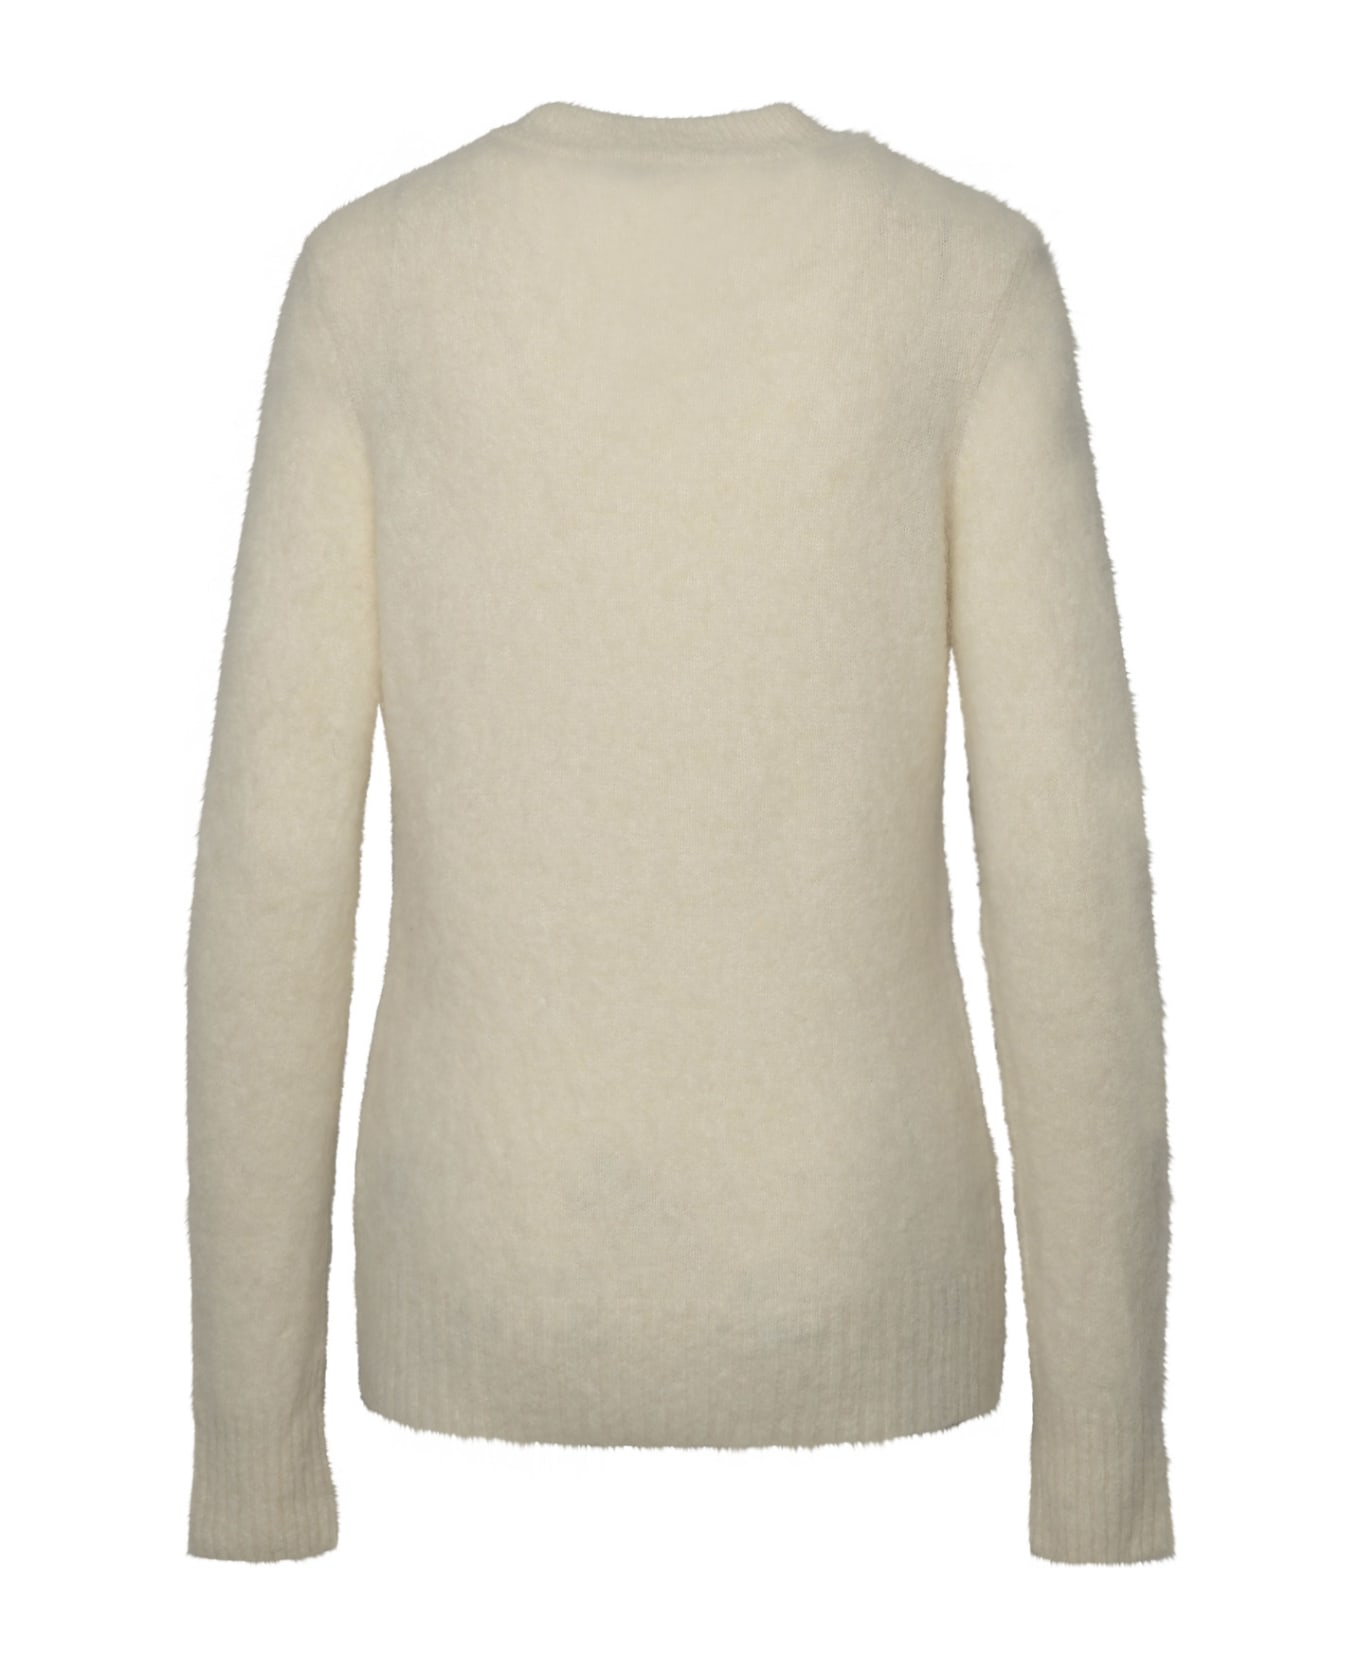 Ganni Ivory Brushed Alpaca Sweater - White